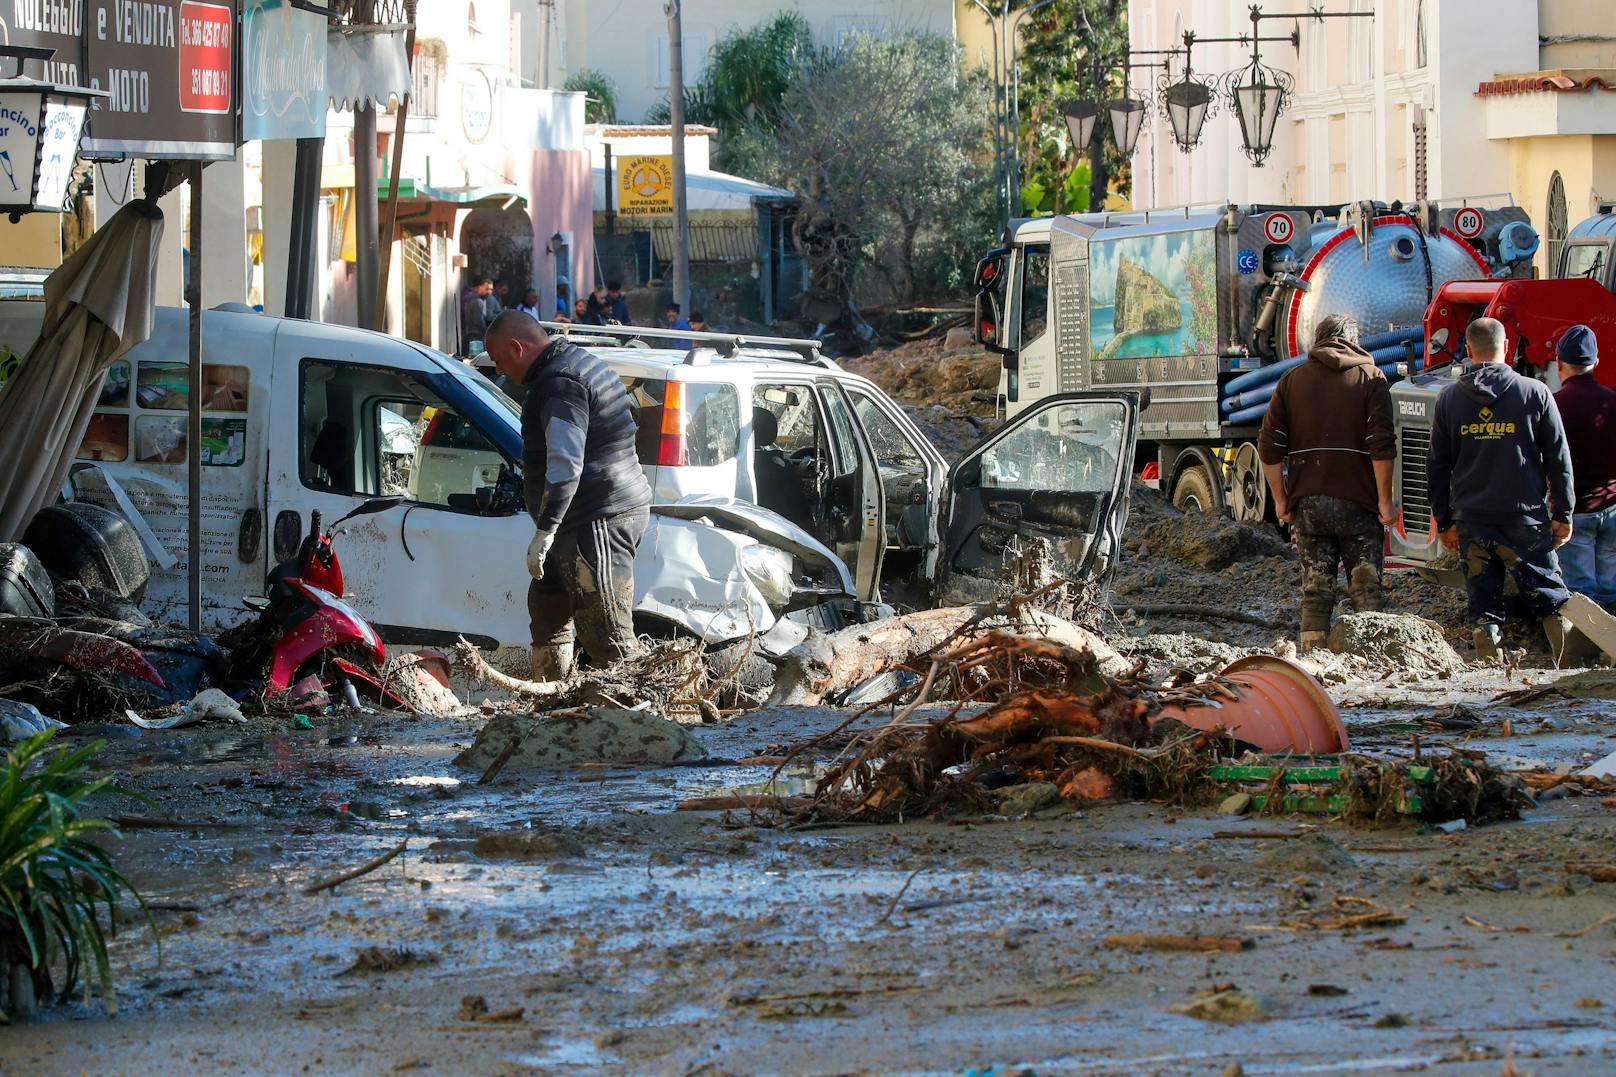 Menschen entfernen Schlamm und Trümmer, nachdem starke Regenfälle Erdrutsche ausgelöst hatten, die Gebäude zum Einsturz brachten, in Casamicciola auf der süditalienischen Insel Ischia.